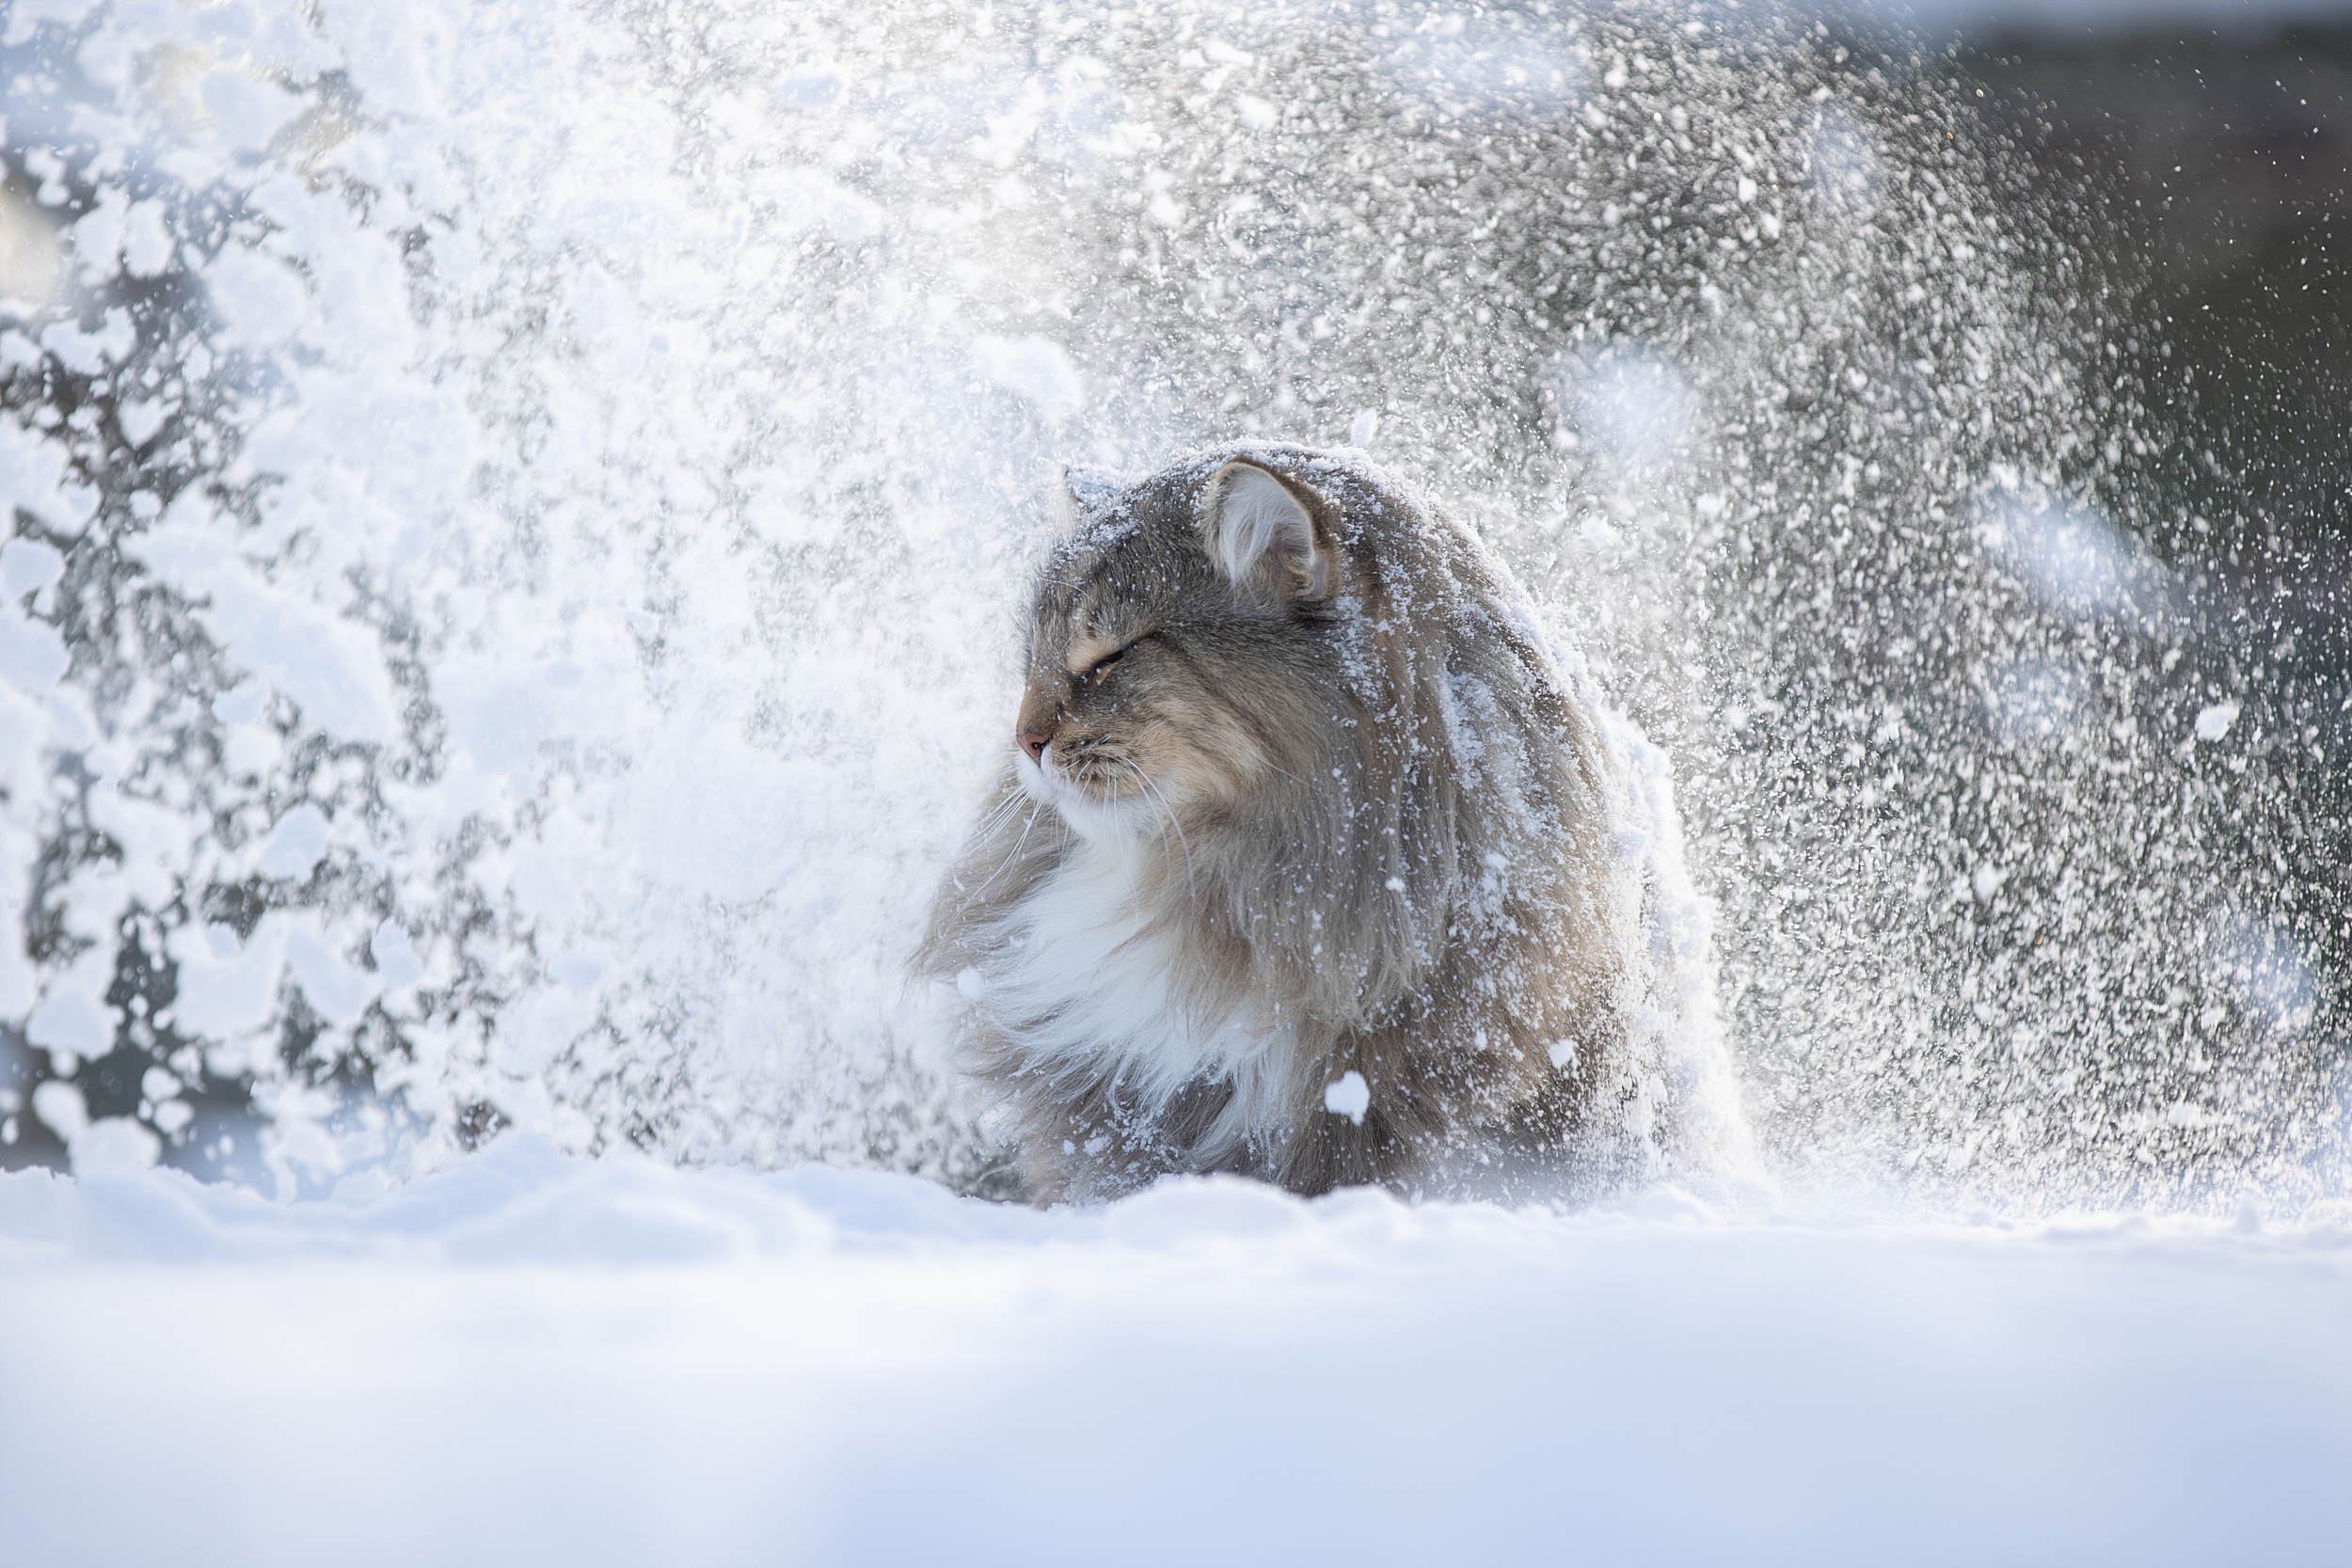 Скачать обои бесплатно Животные, Зима, Снег, Кошка, Кошки картинка на рабочий стол ПК